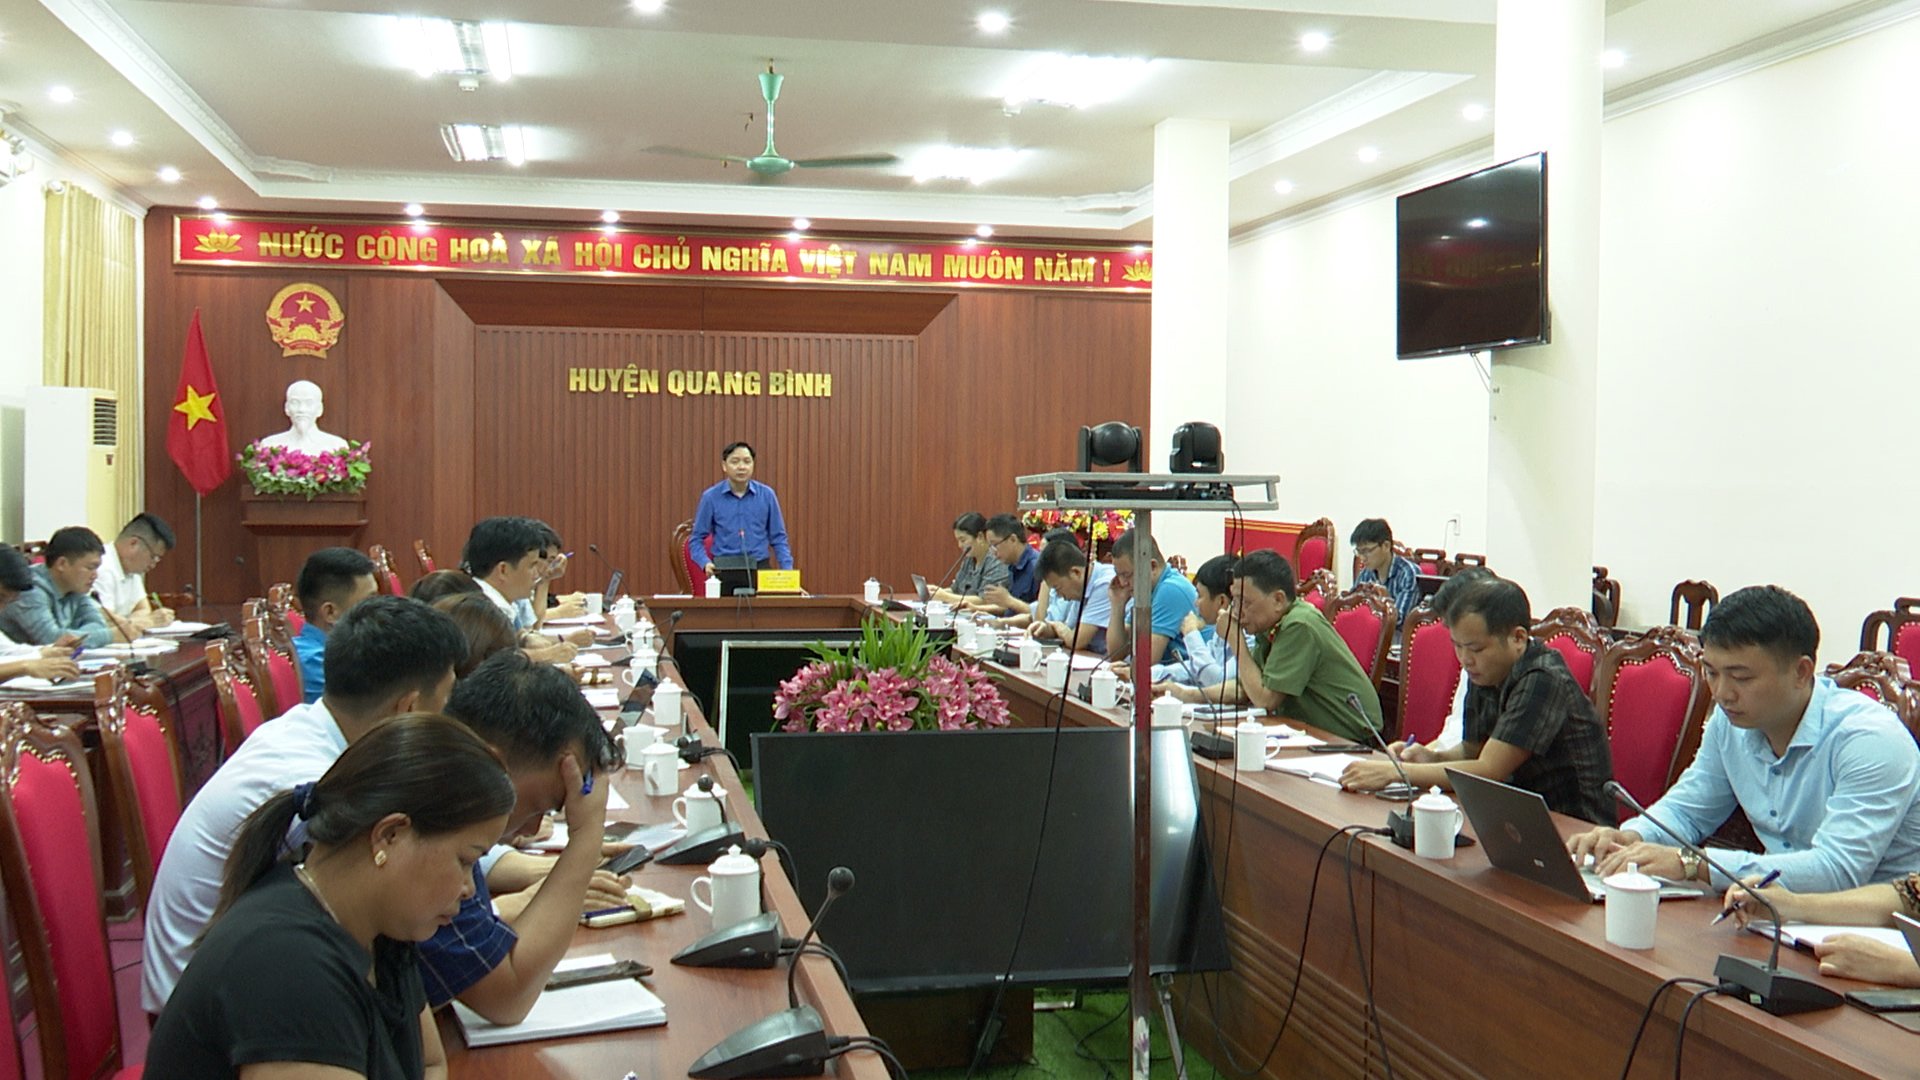 Họp triển khai tổ chức Hội chợ việc làm huyện Quang Bình năm 2024